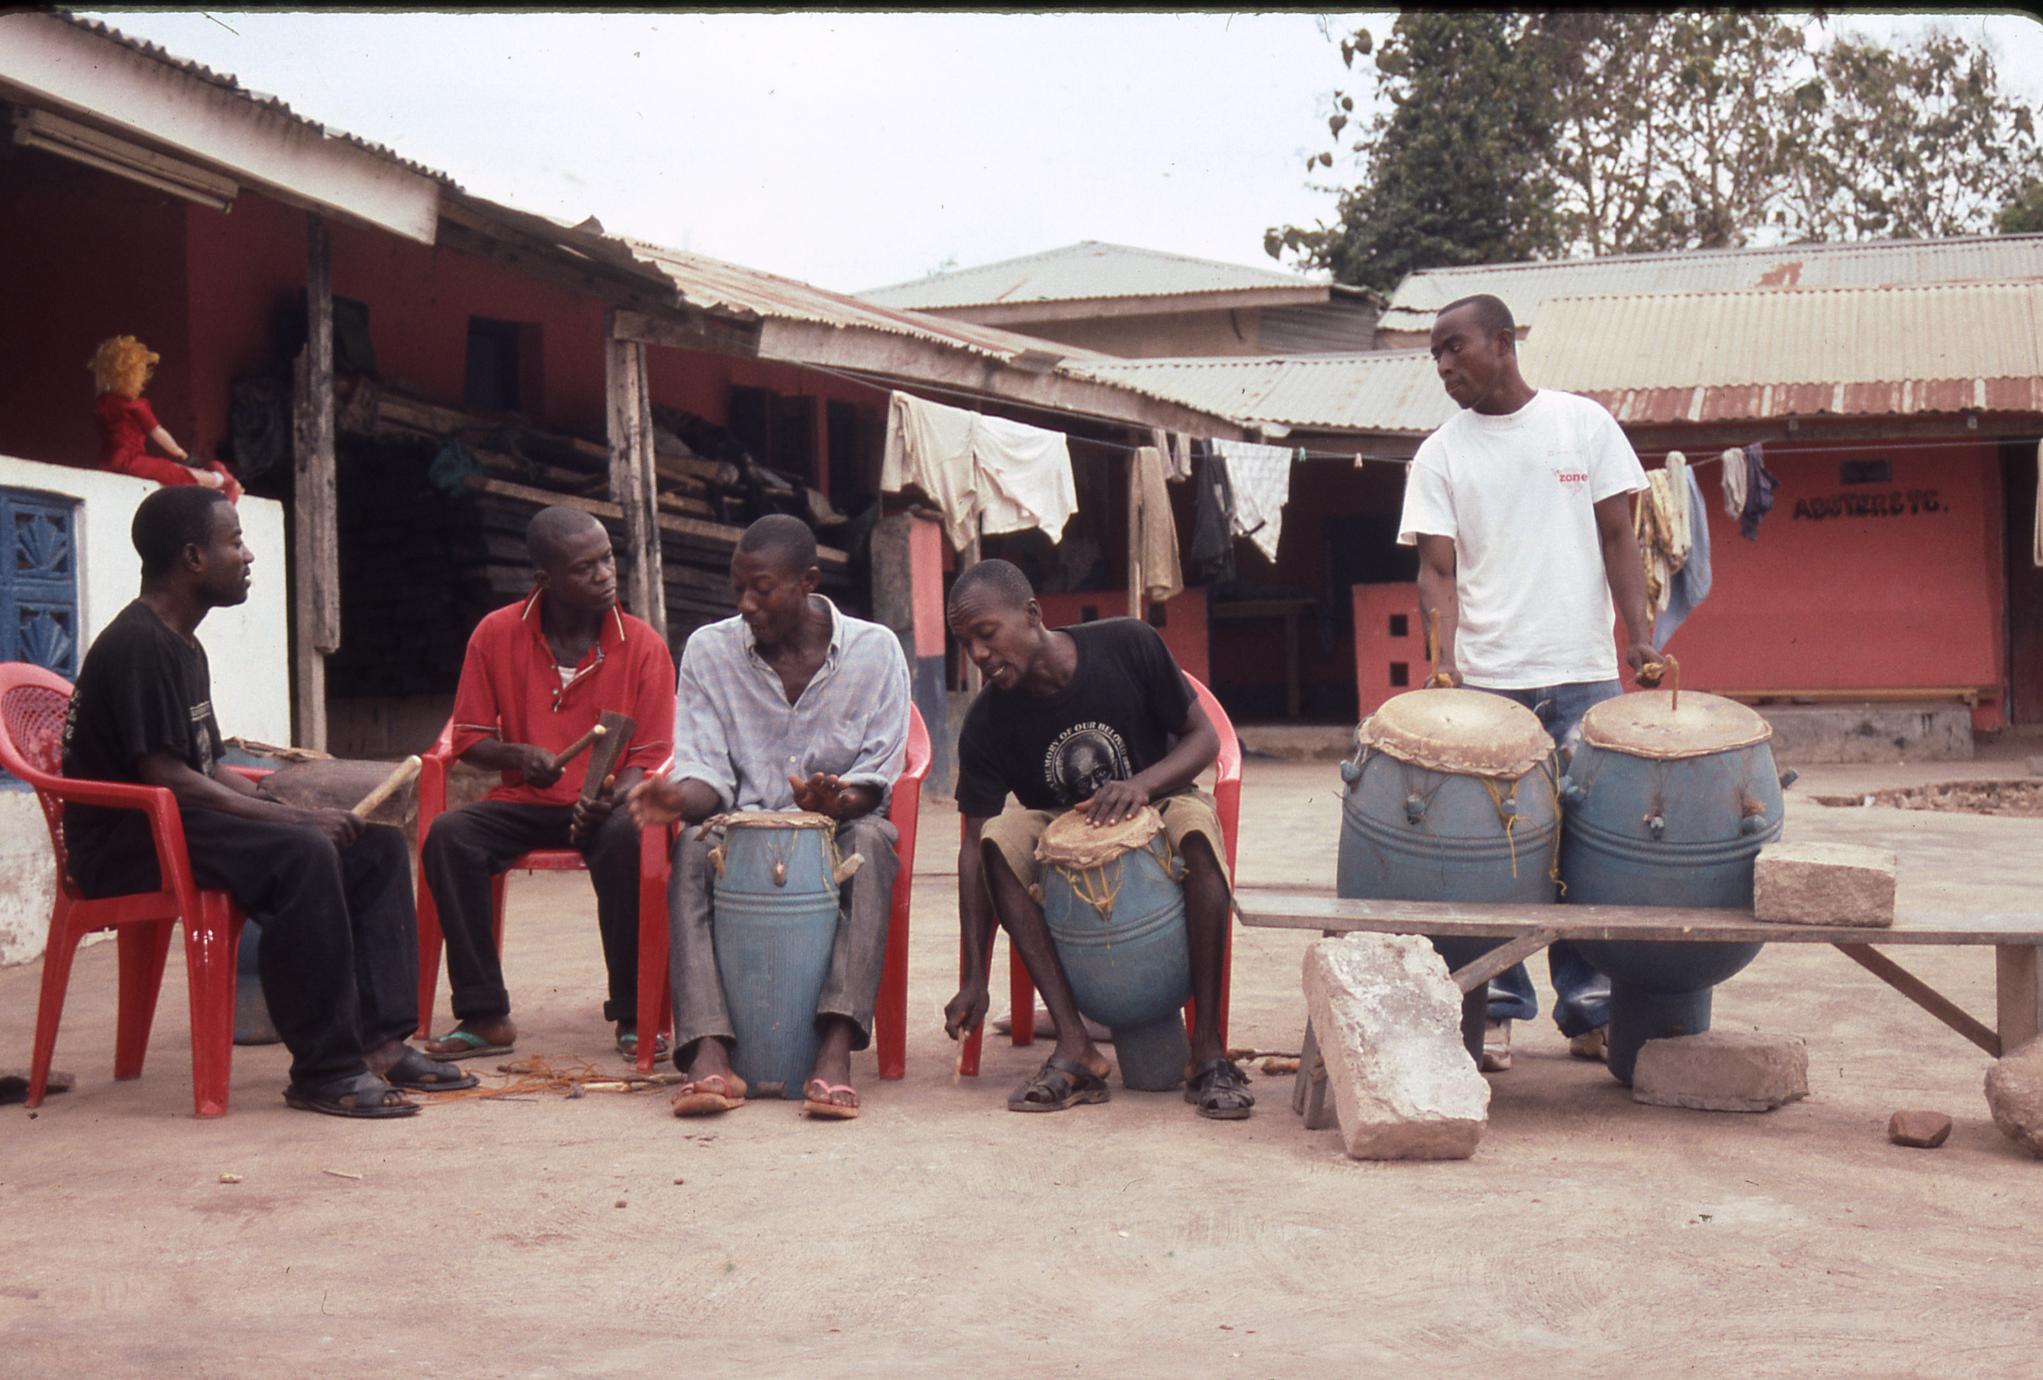 Ghana drummers